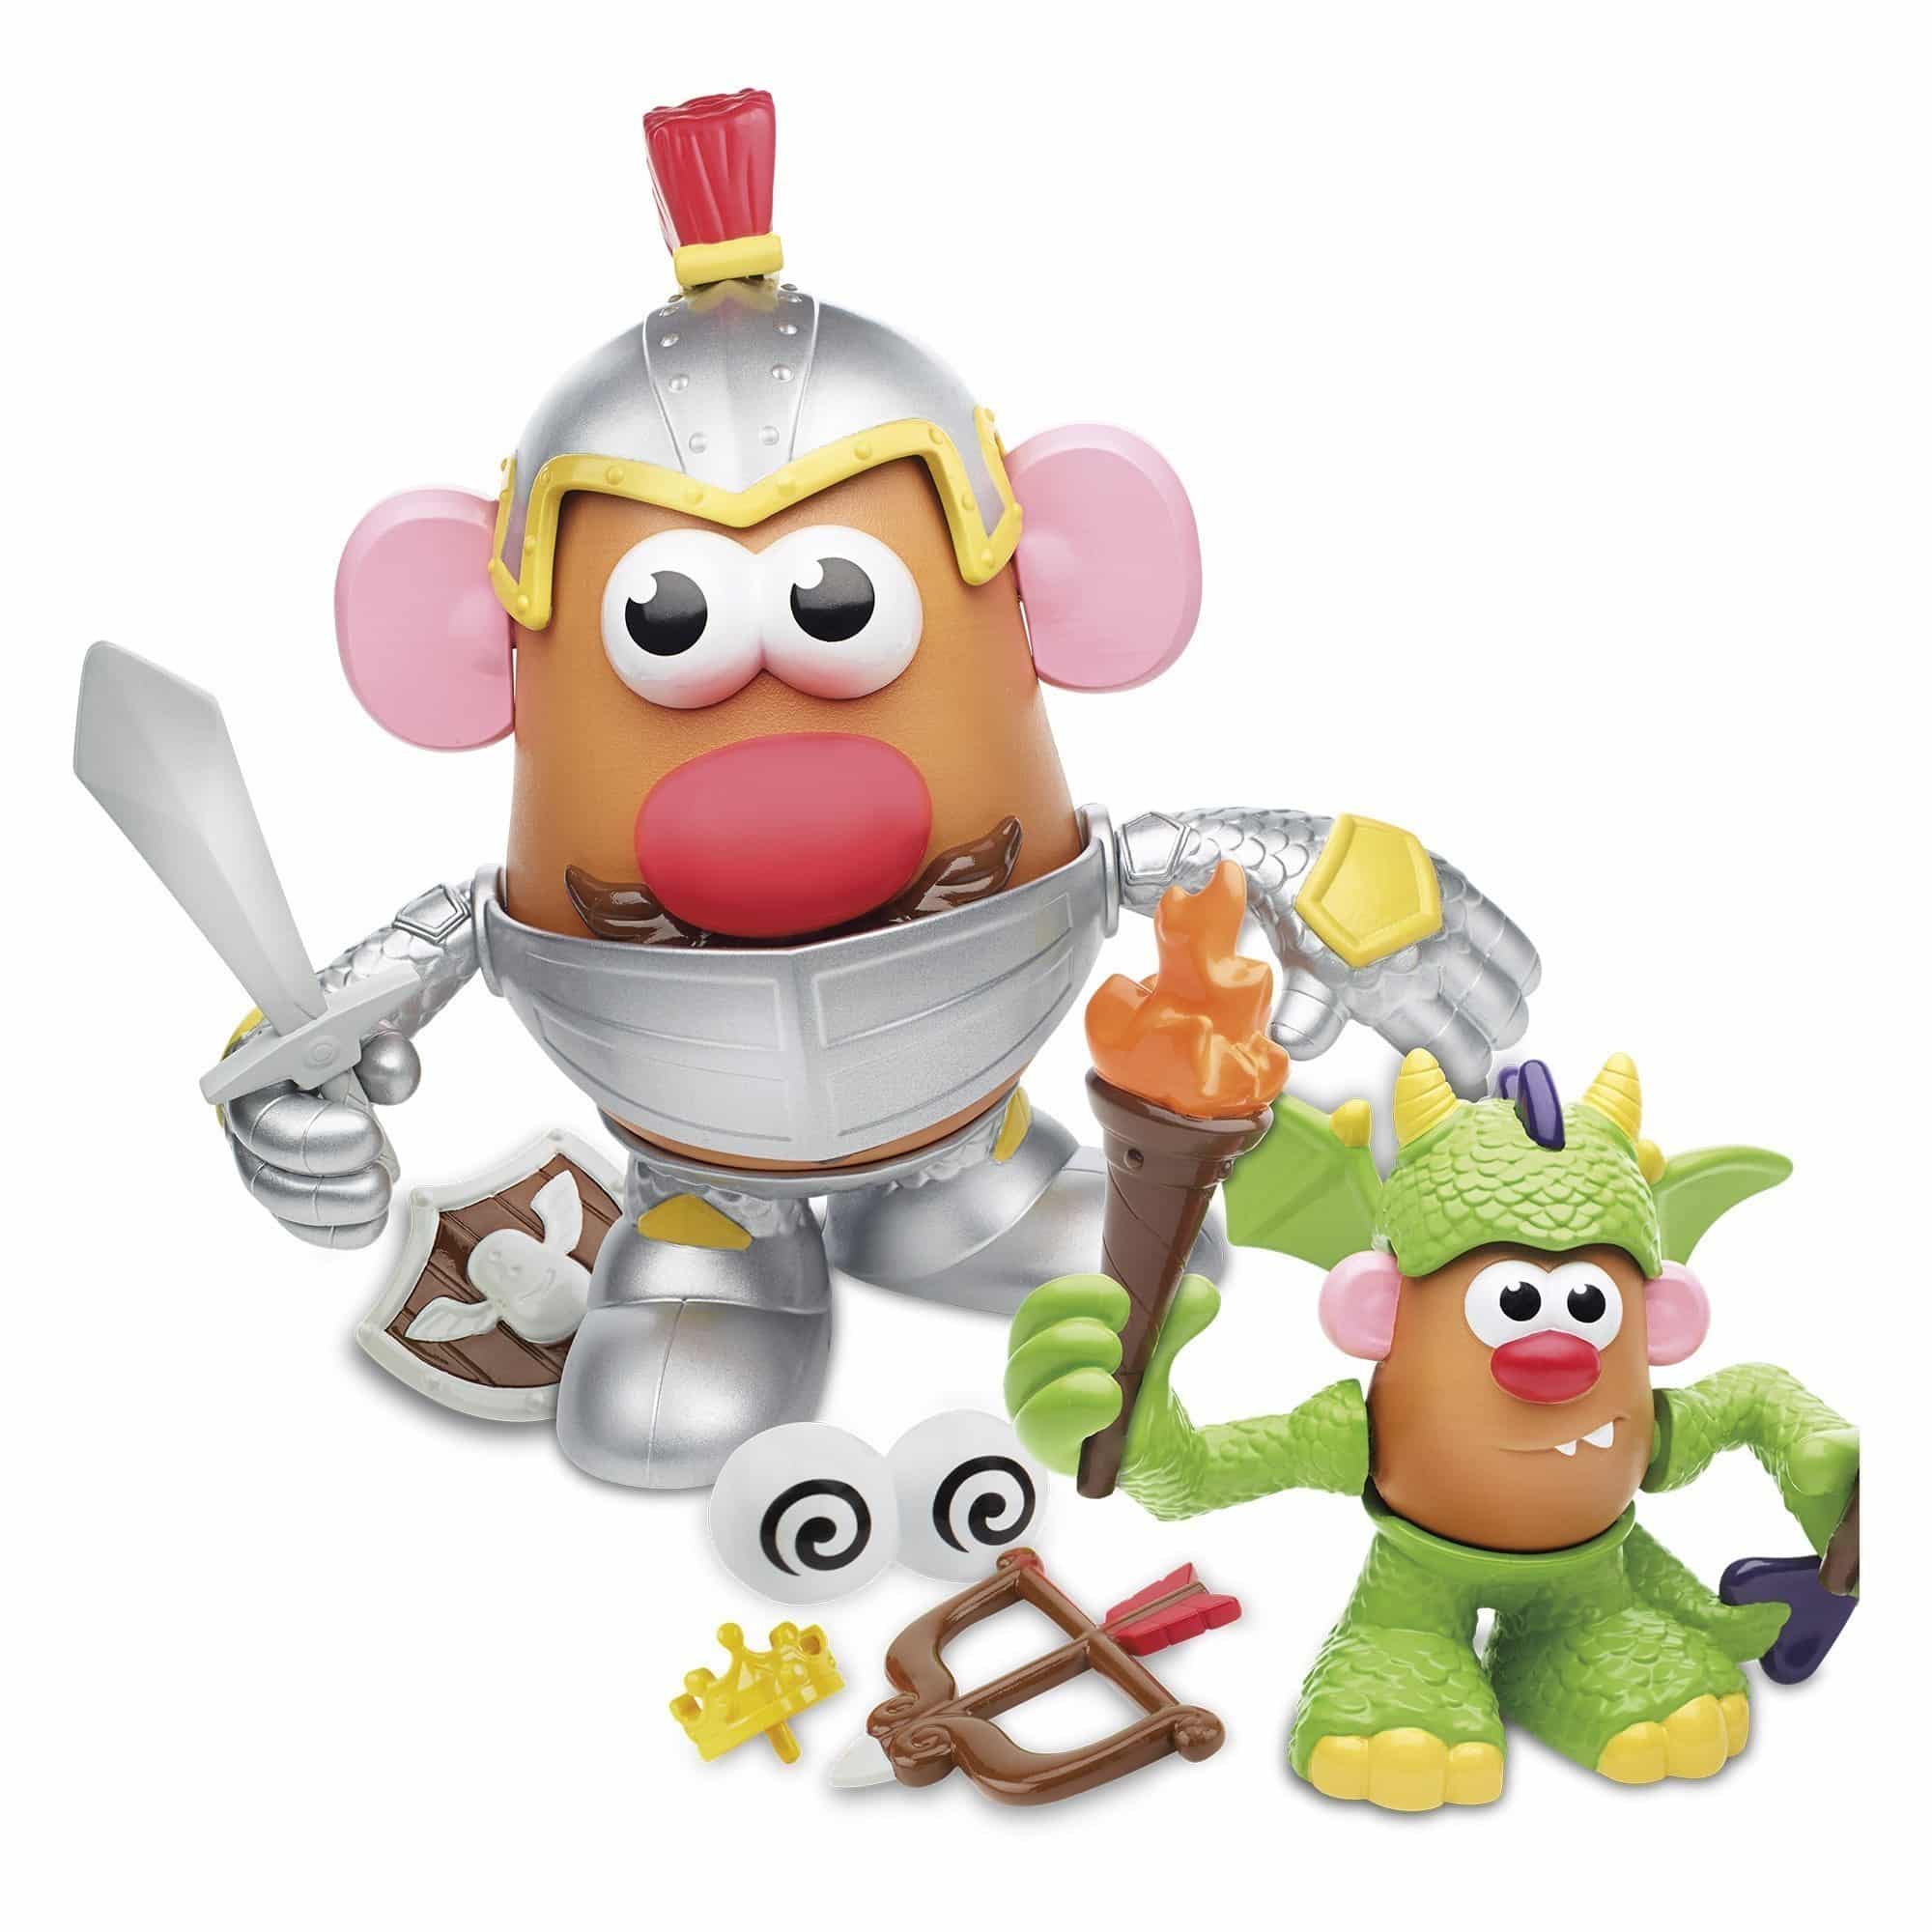 Playskool Friends - Mr Potato Head - Knight Story Pack